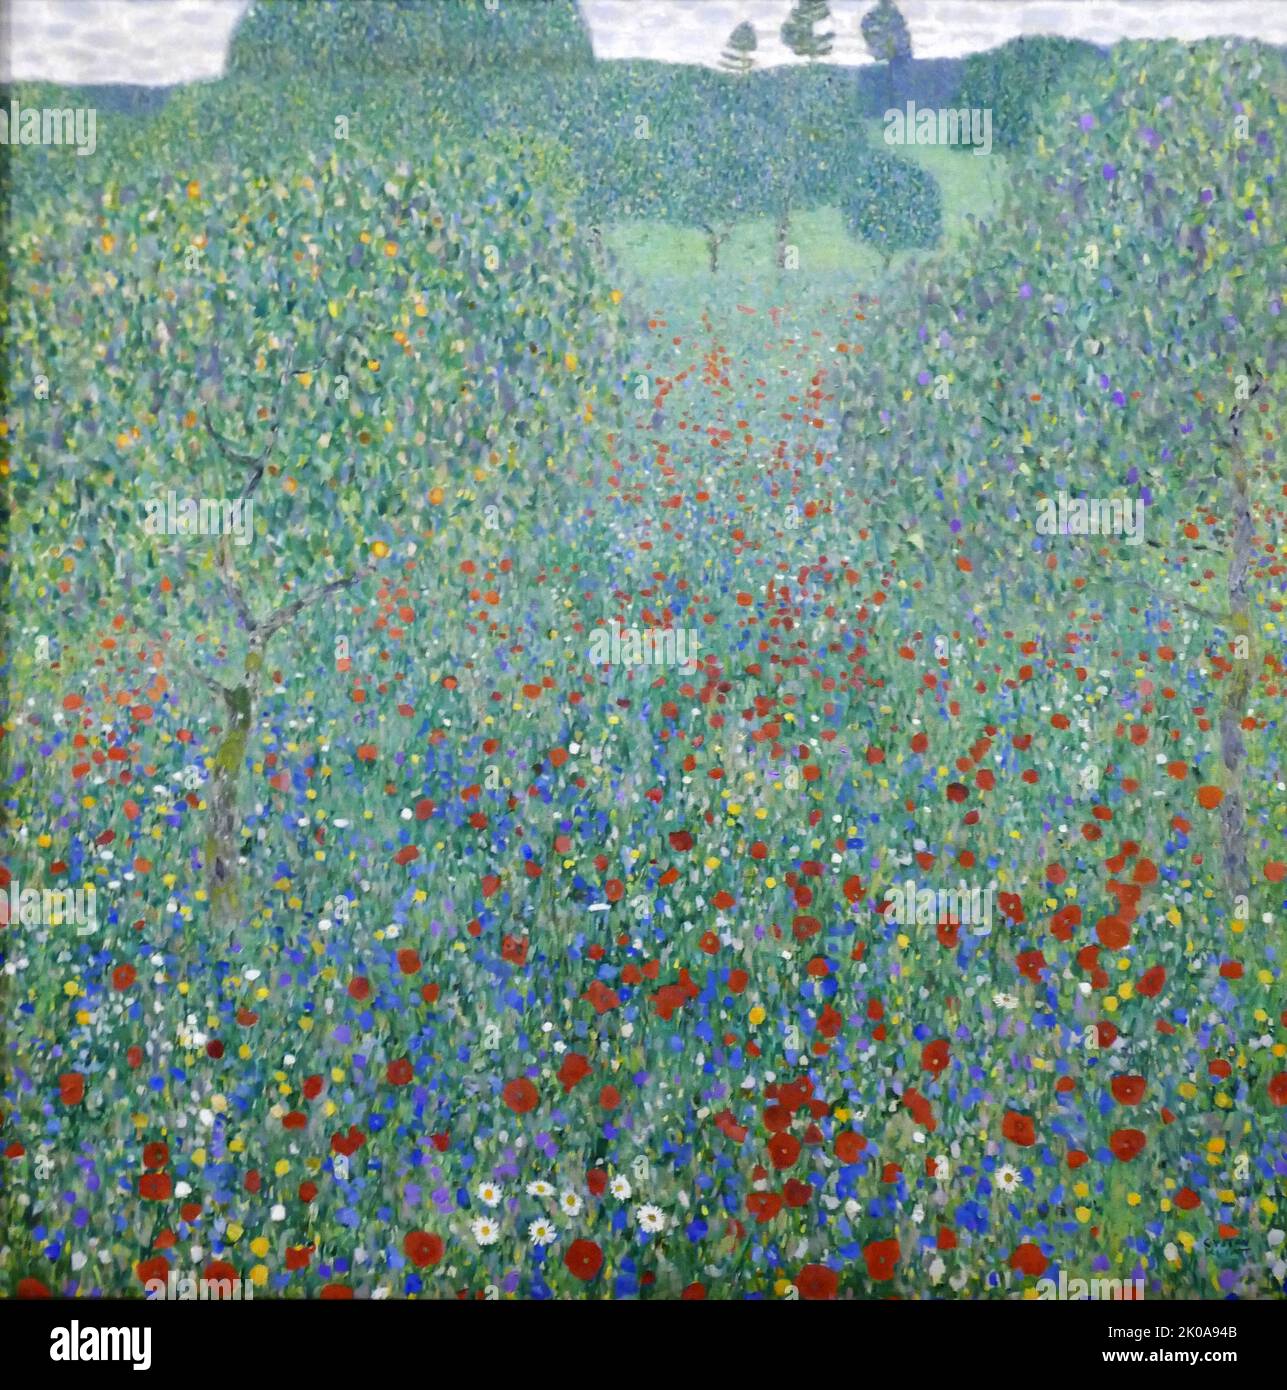 Papaveri fioriti, 1907. Campo di papavero. Olio su tela di Gustav Klimt. Gustav Klimt (Vienna, 14 luglio 1862 – Vienna, 6 febbraio 1918) è stato un . Klimt è noto per i suoi dipinti, murales, schizzi e altri oggetti d'arte Foto Stock